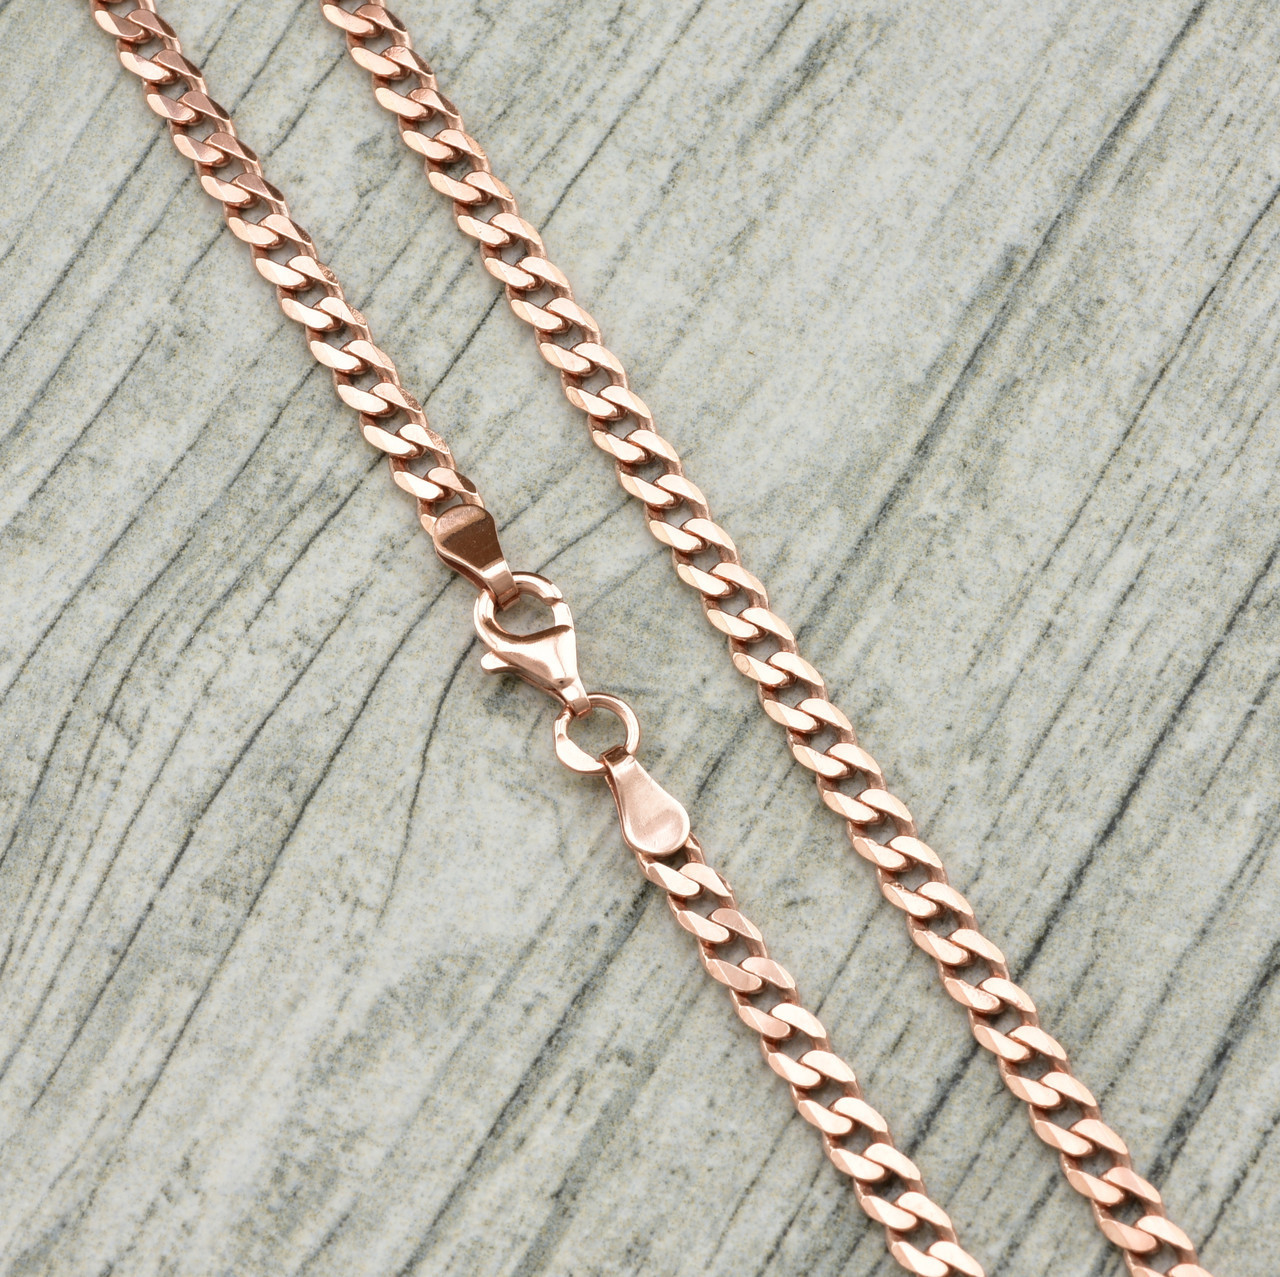 

Серебряная цепочка позолоченная Панцирная скруглённая ширина 3.5 мм длина 55